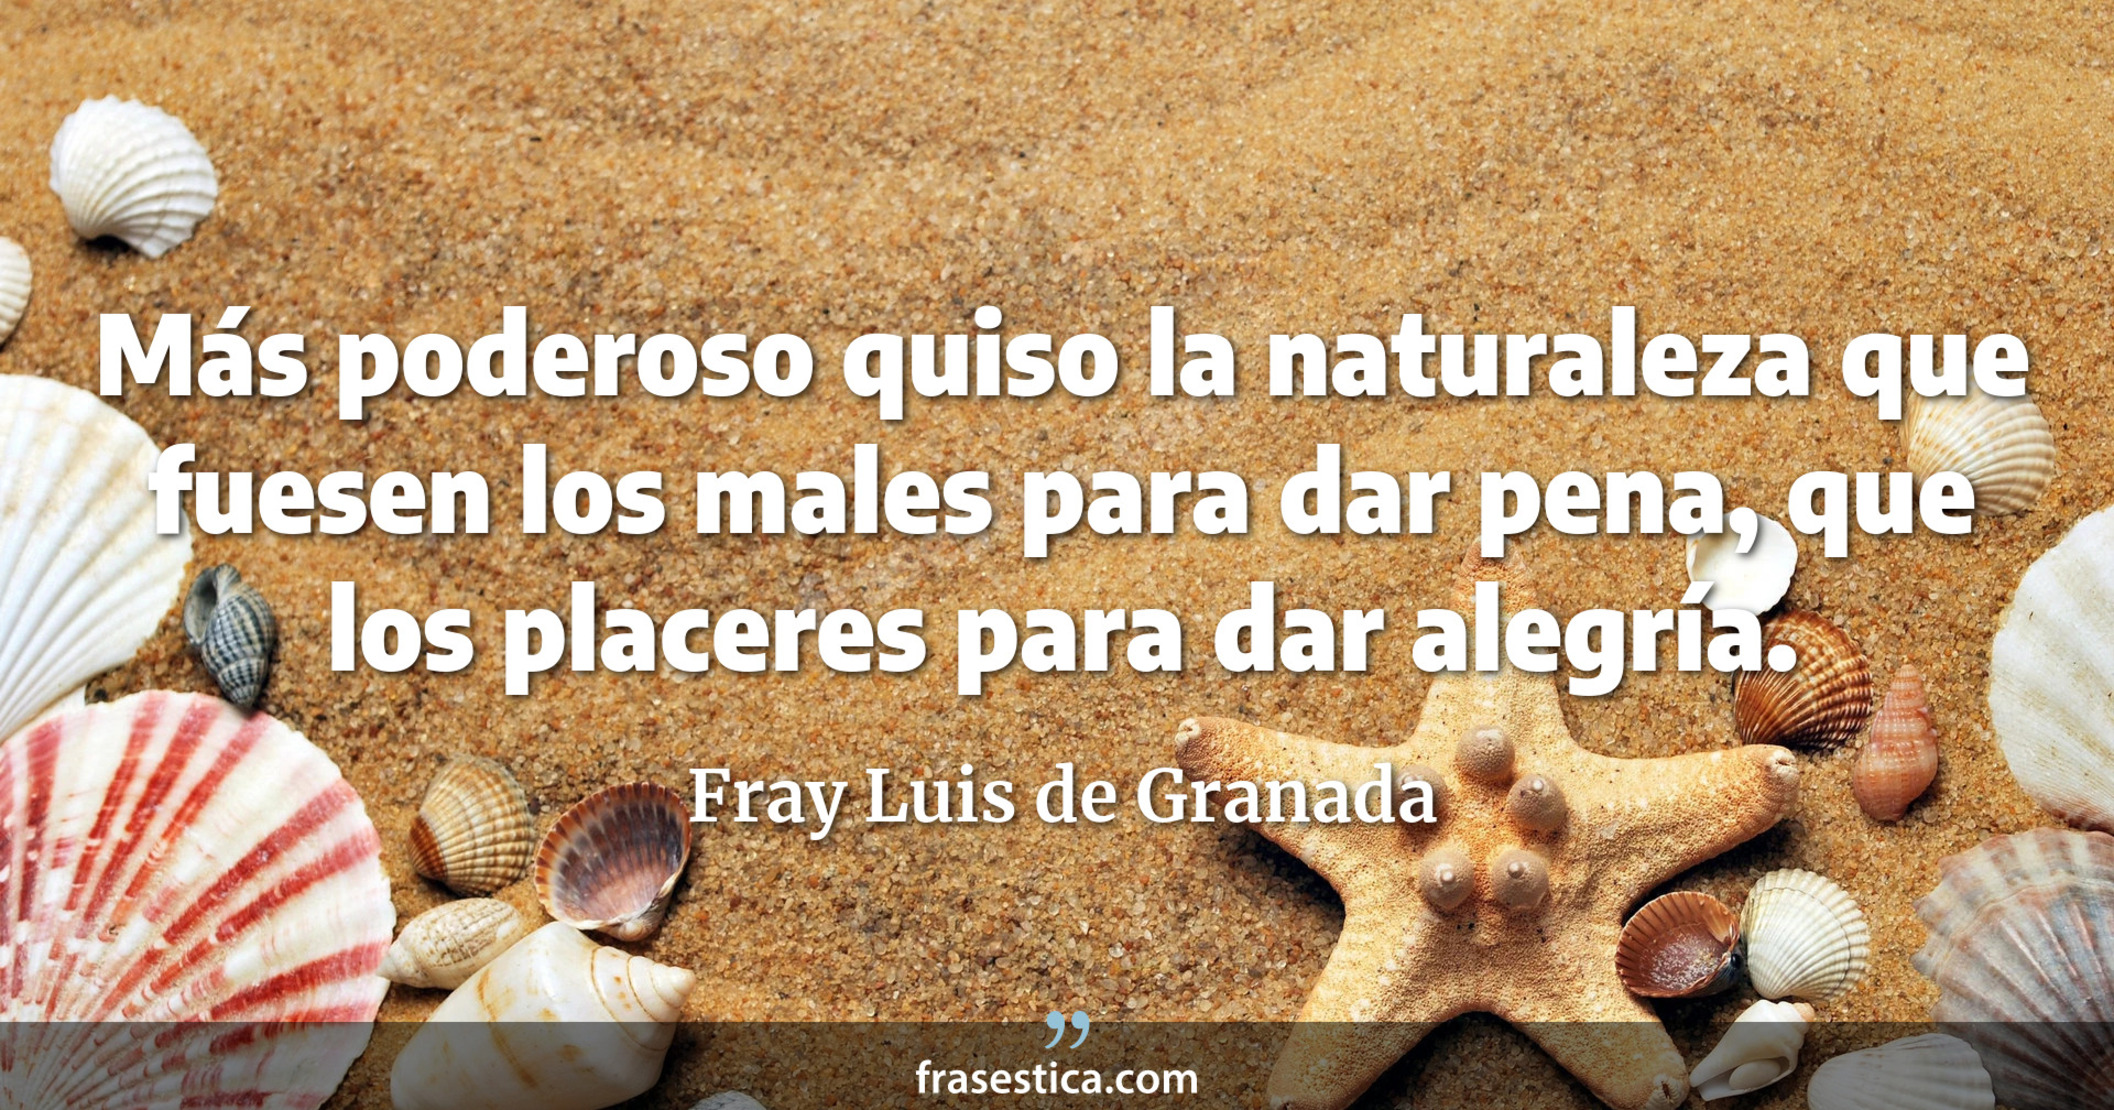 Más poderoso quiso la naturaleza que fuesen los males para dar pena, que los placeres para dar alegría. - Fray Luis de Granada